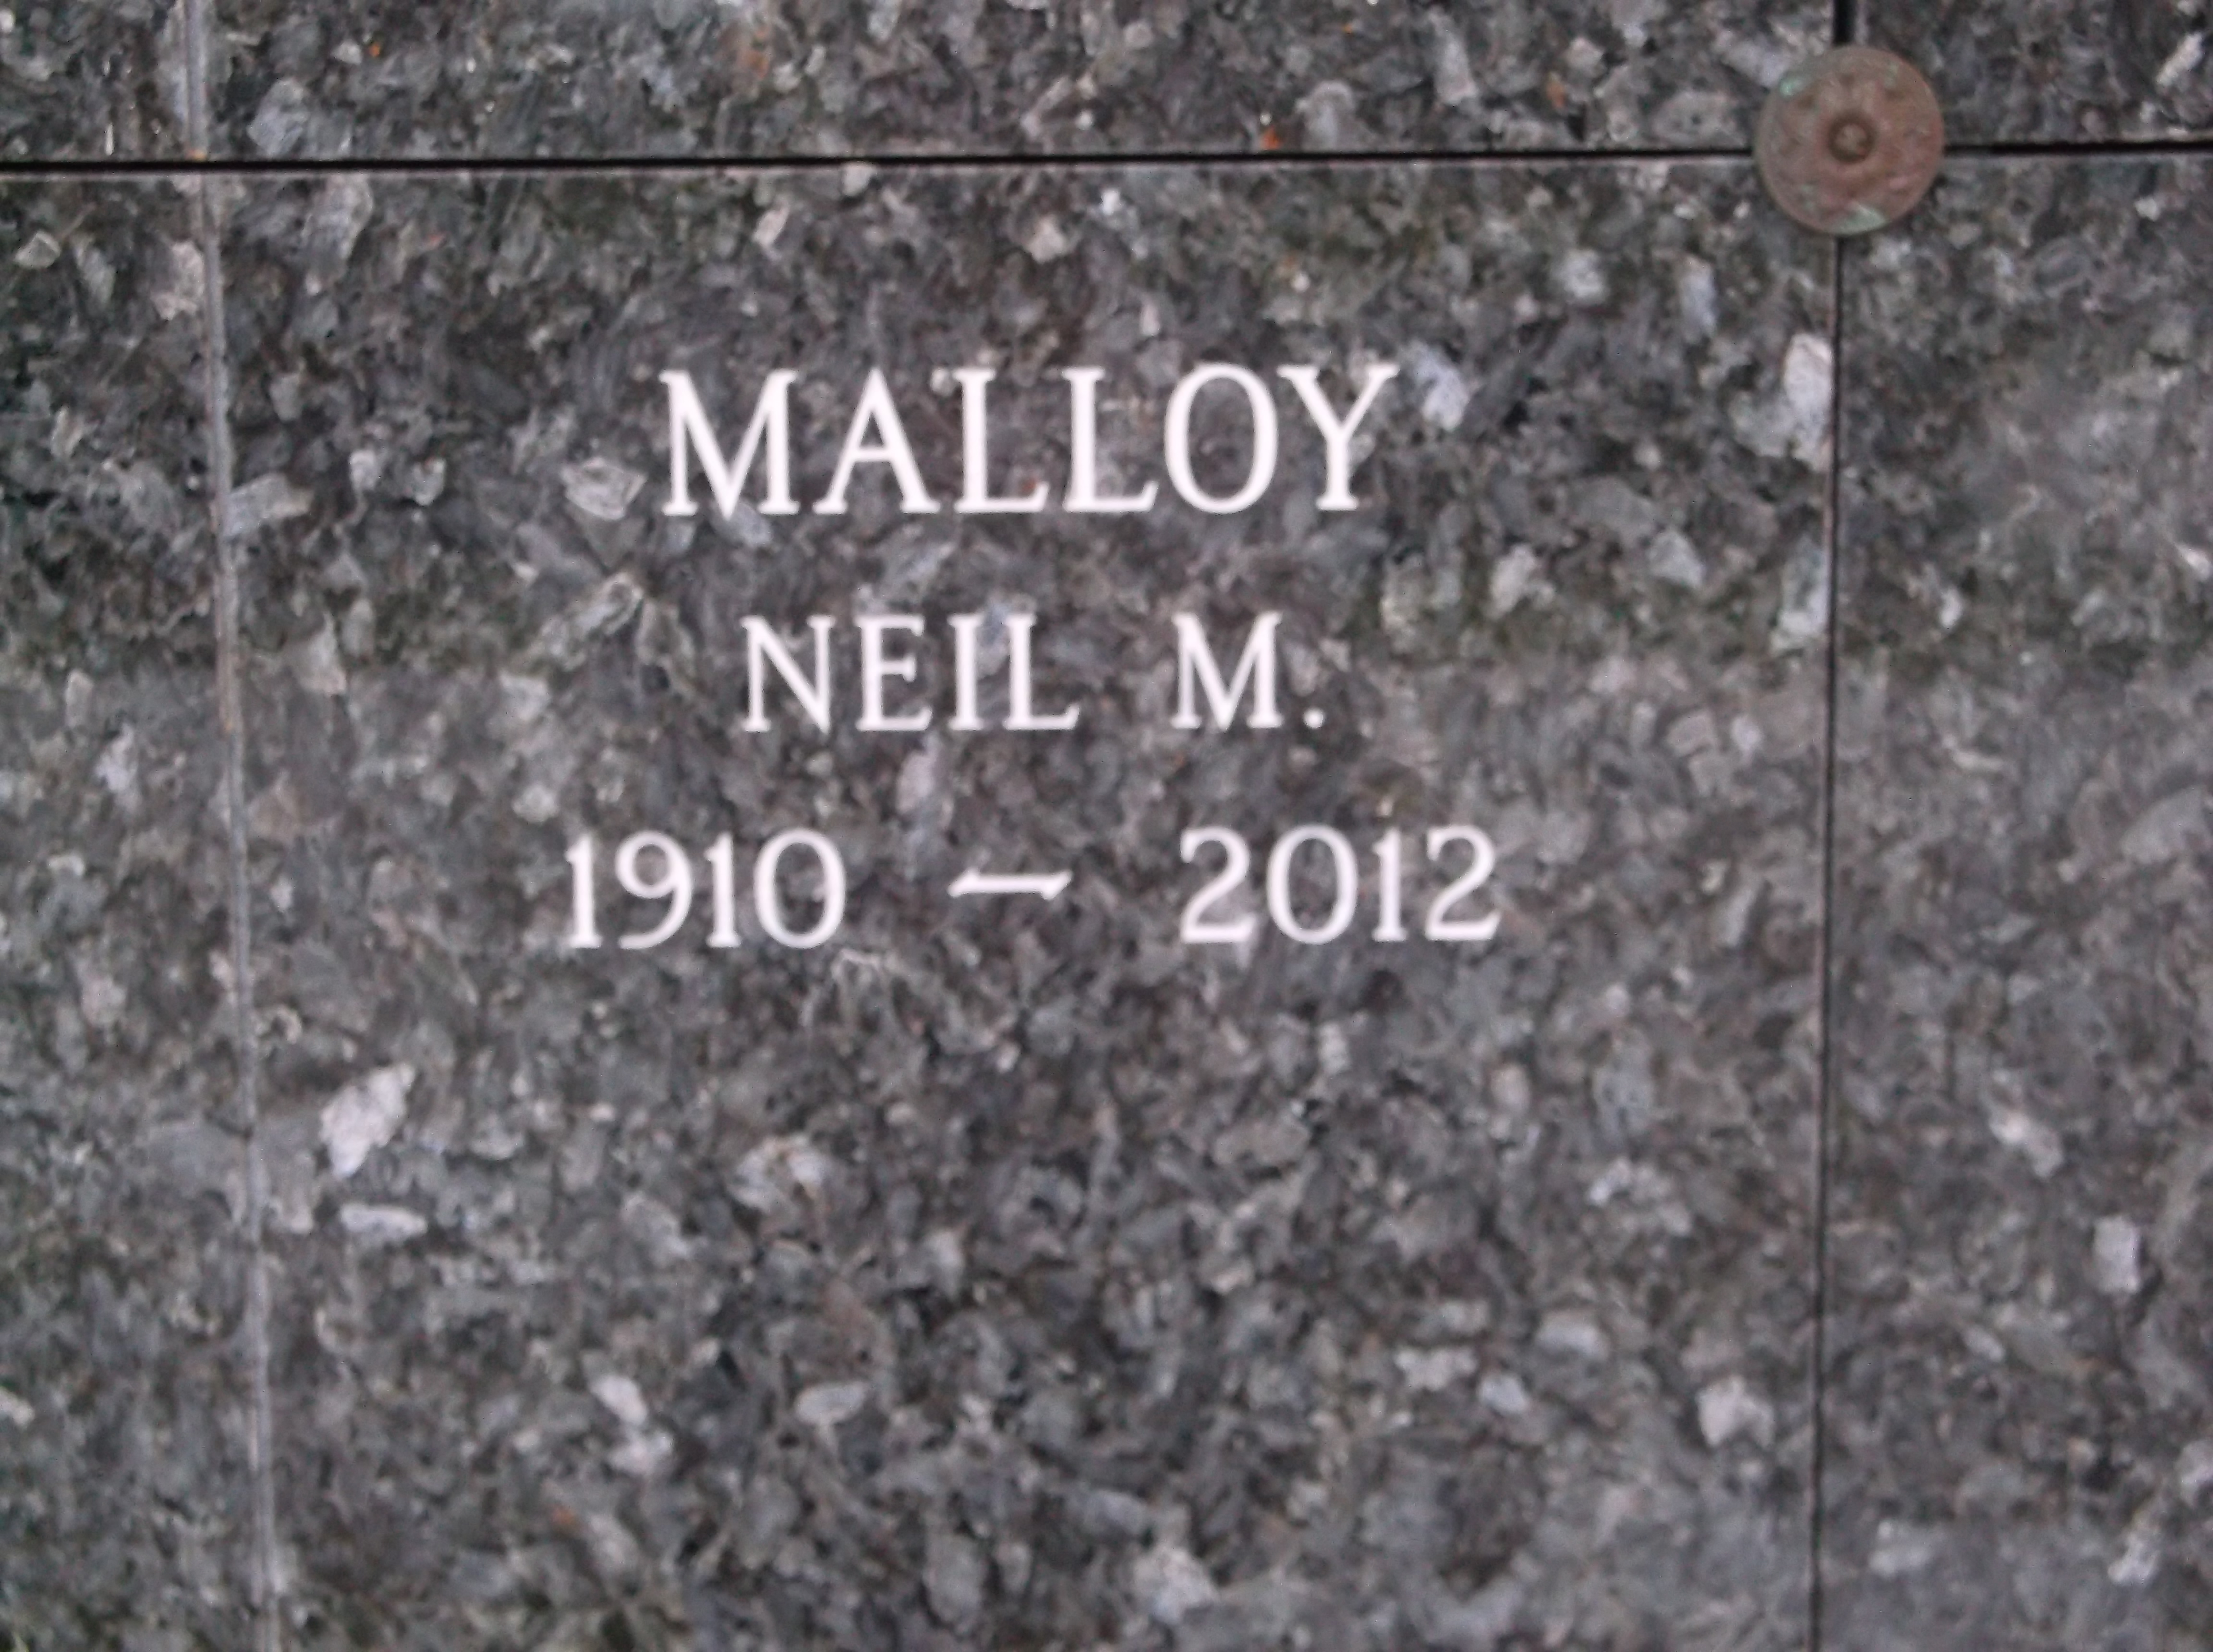 Neil M Malloy